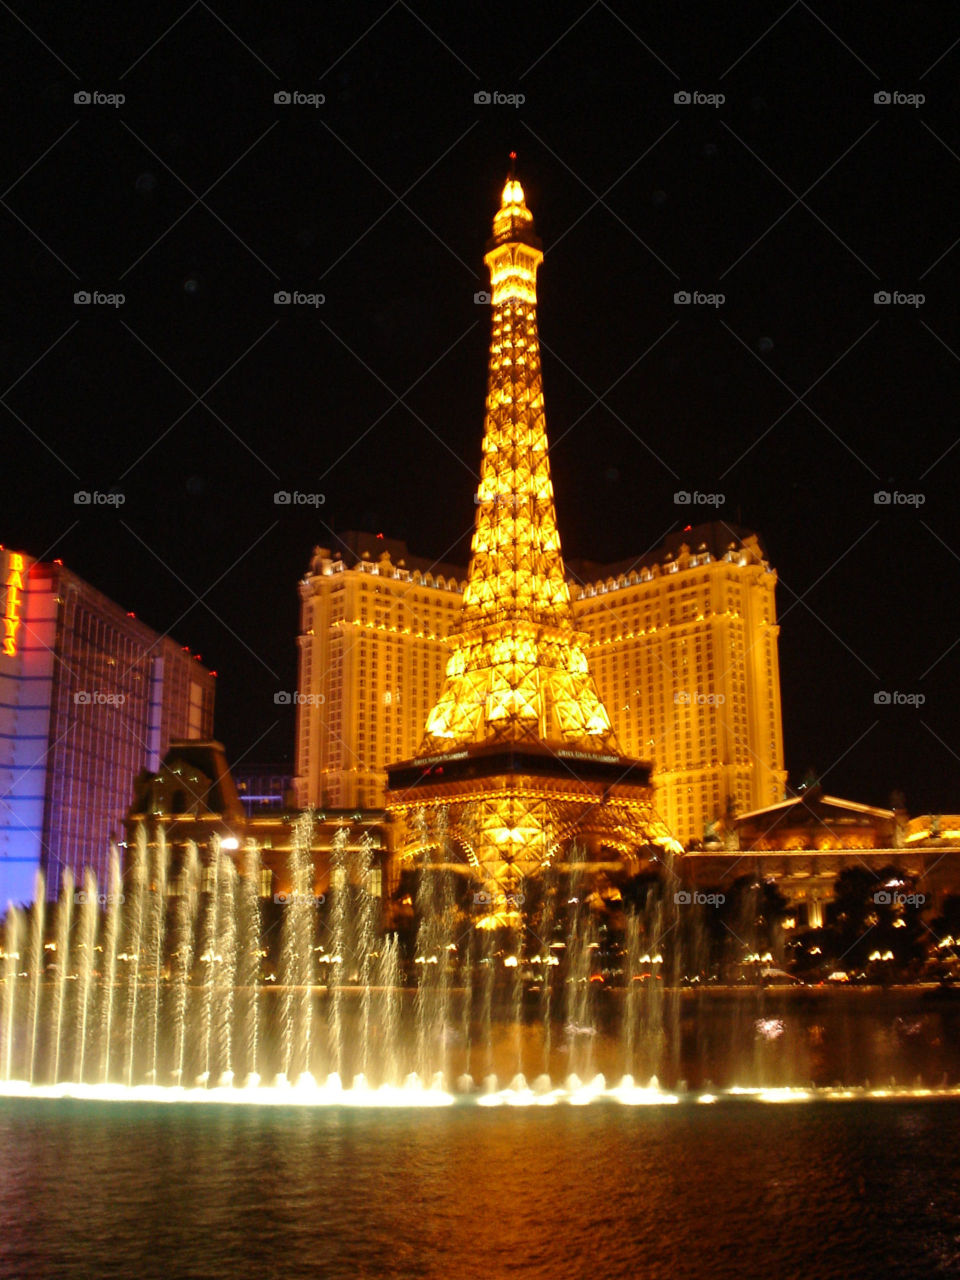 Paris Casino, Las Vegas, Nevada. 
Night View of The Strip, Illuminated